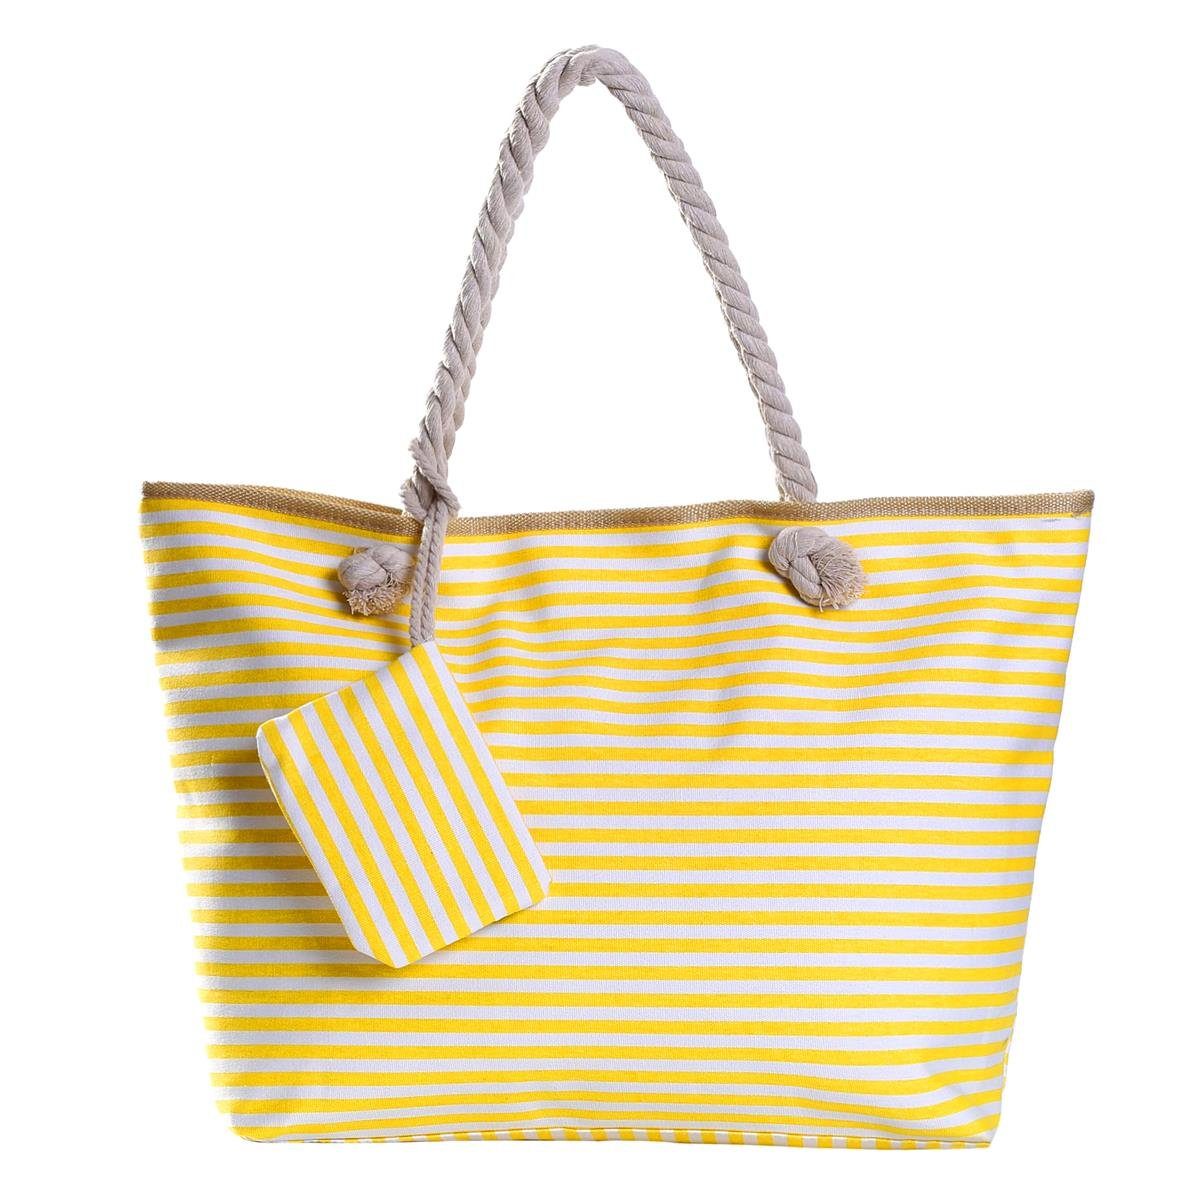 DonDon Strandtasche Shopper wasserabweisende Tasche (2-tlg), Große Strandtasche, mit Reißverschluss, inkl. kleinem Beutel gelb-weiß gestreift 1